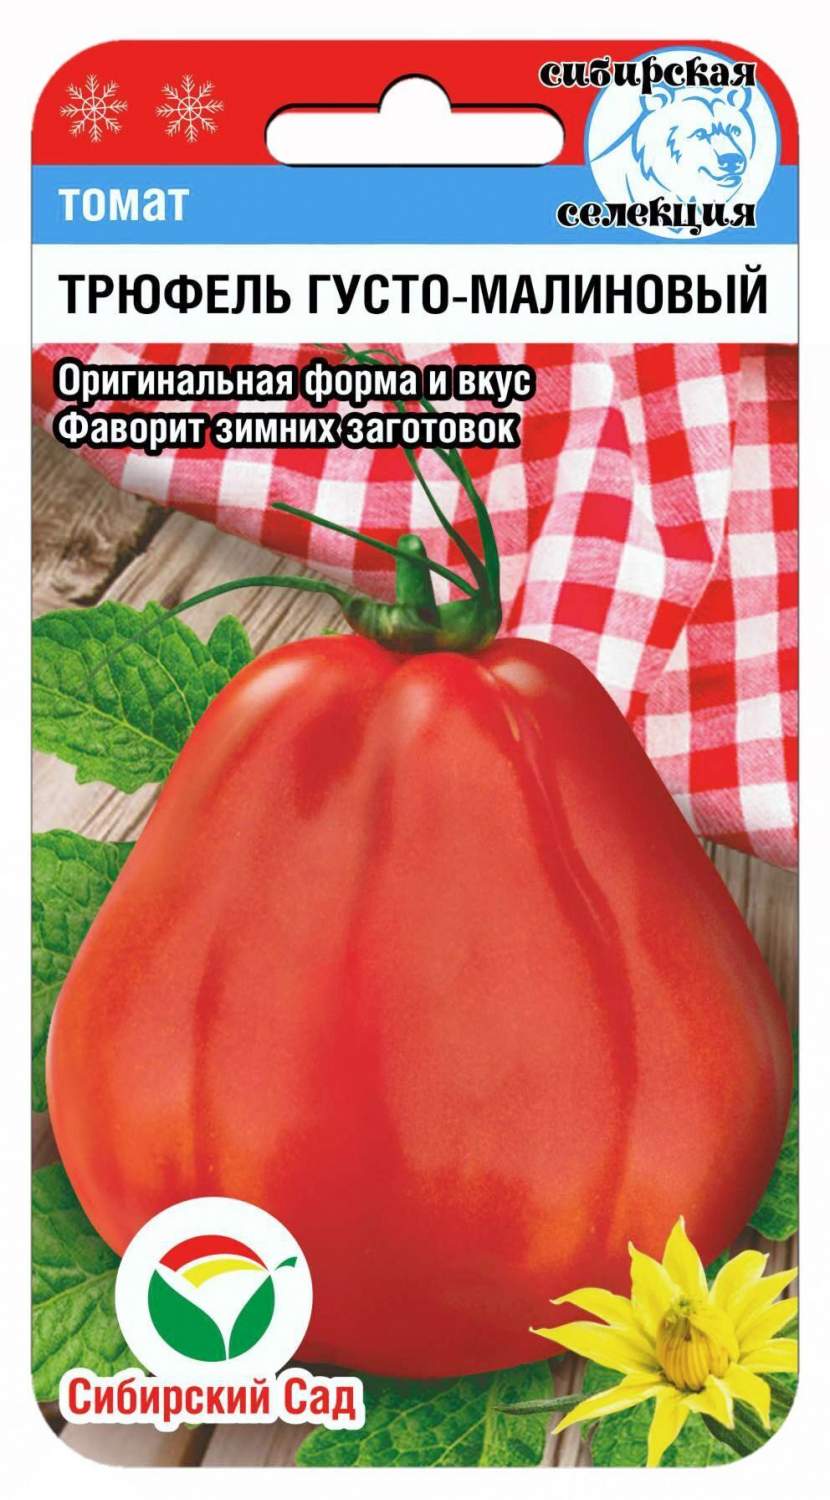 Семена томат Сибирский сад Трюфель густомалиновый 24237 1 уп. - отзывыпокупателей на Мегамаркет